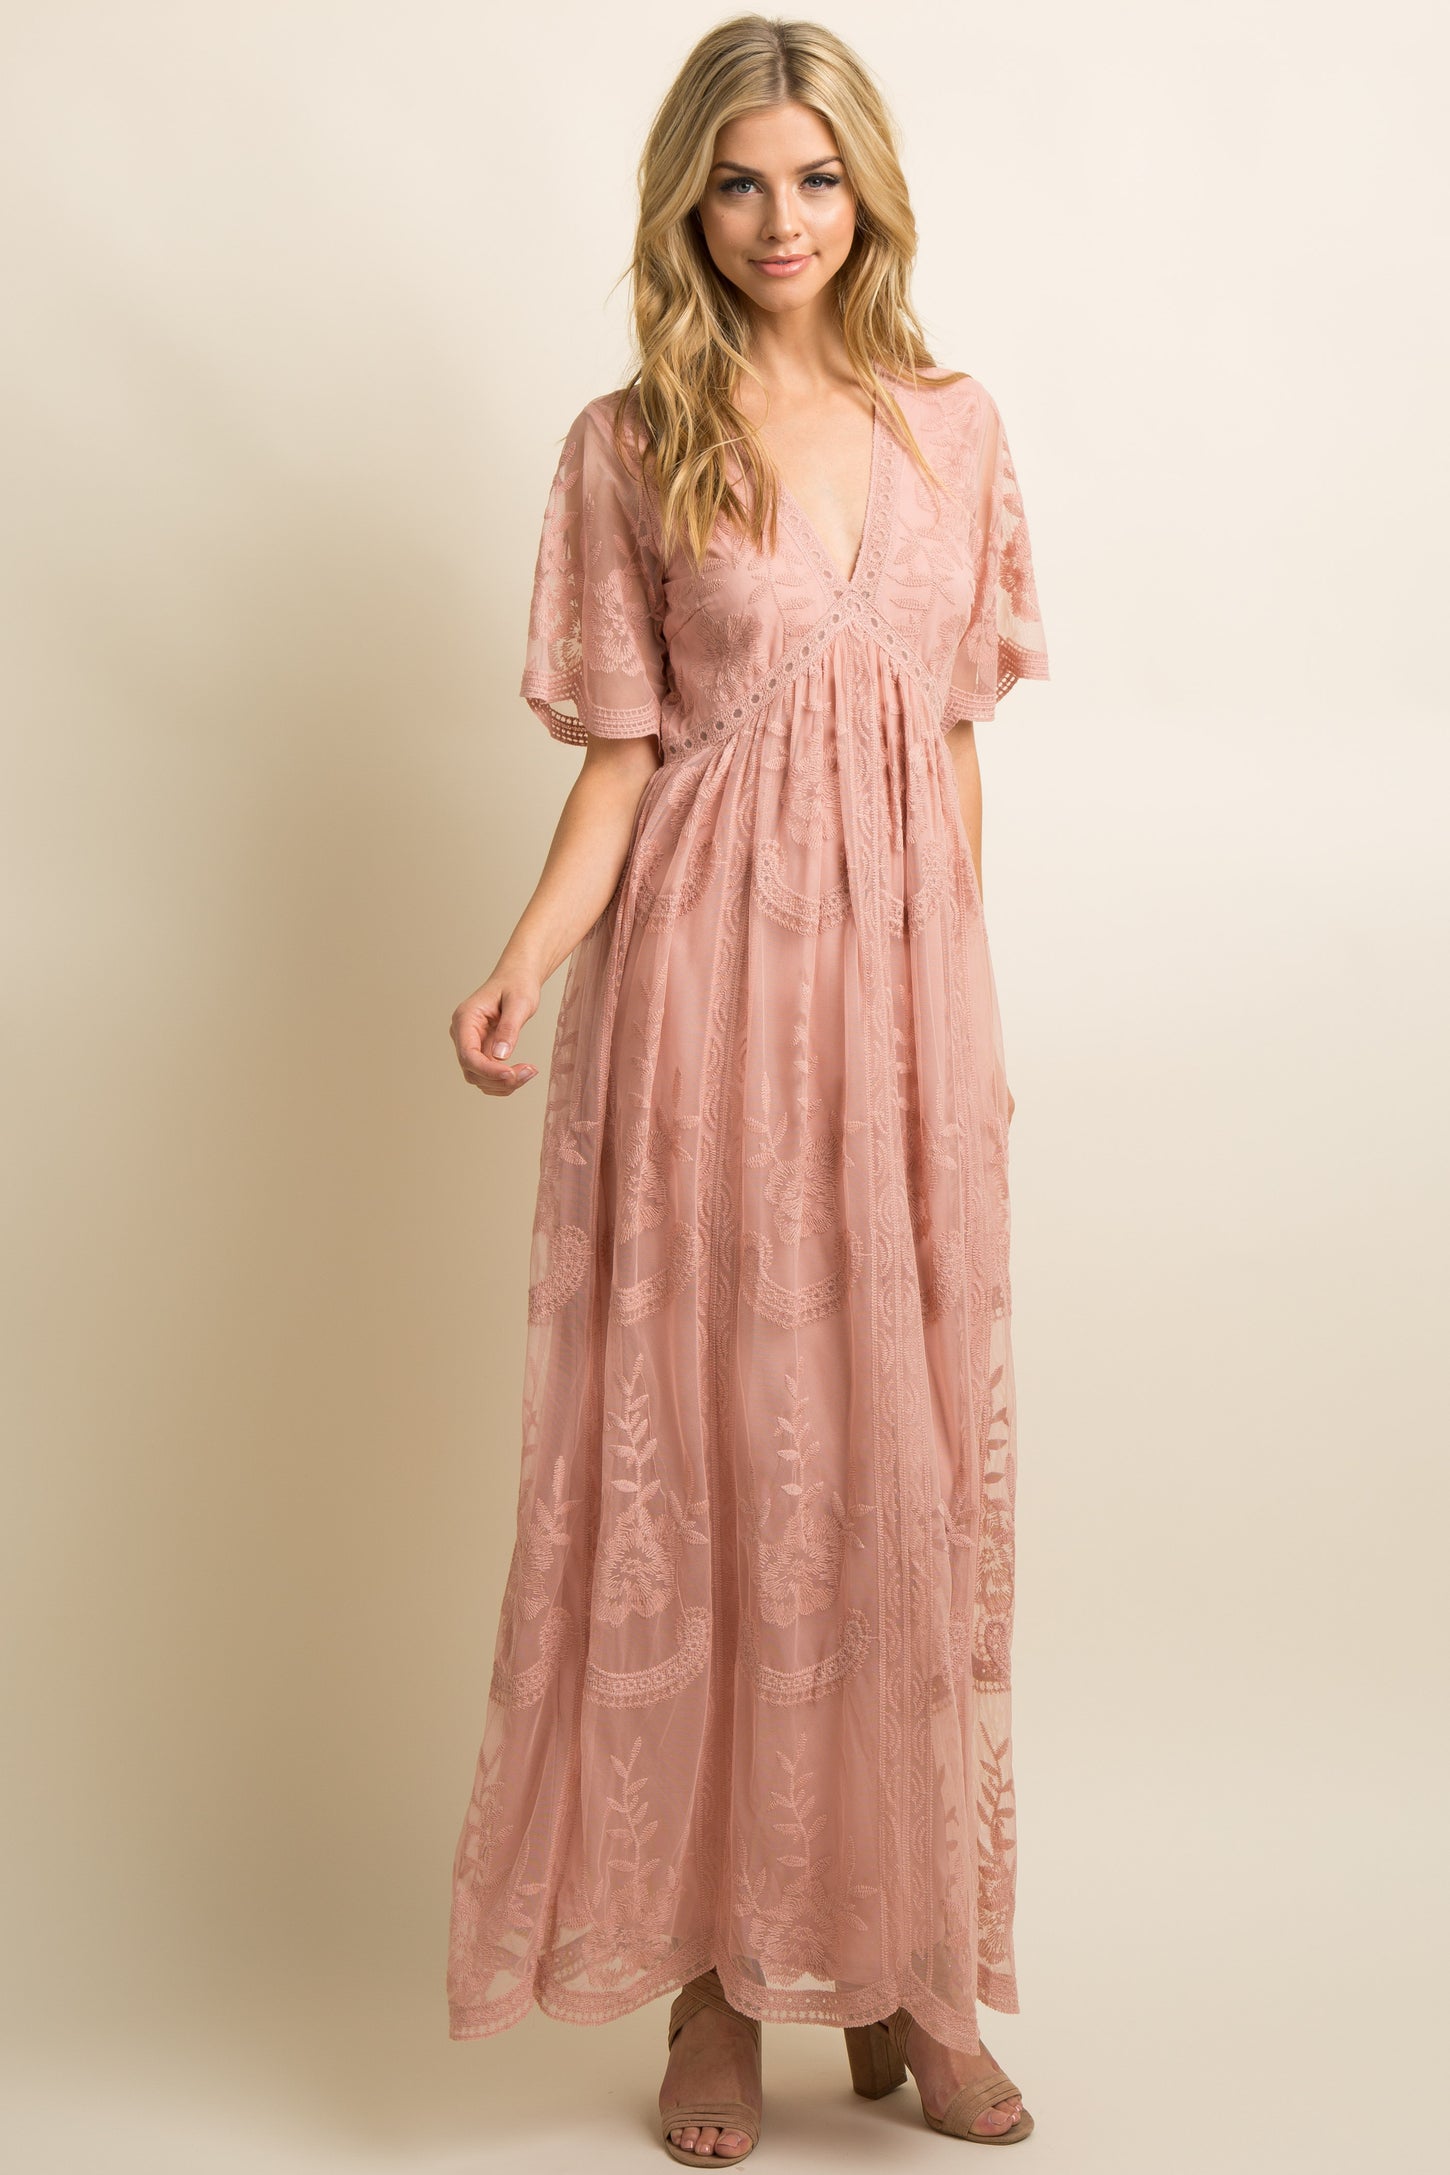 Light Pink Lace Mesh Overlay Maxi Dress– PinkBlush